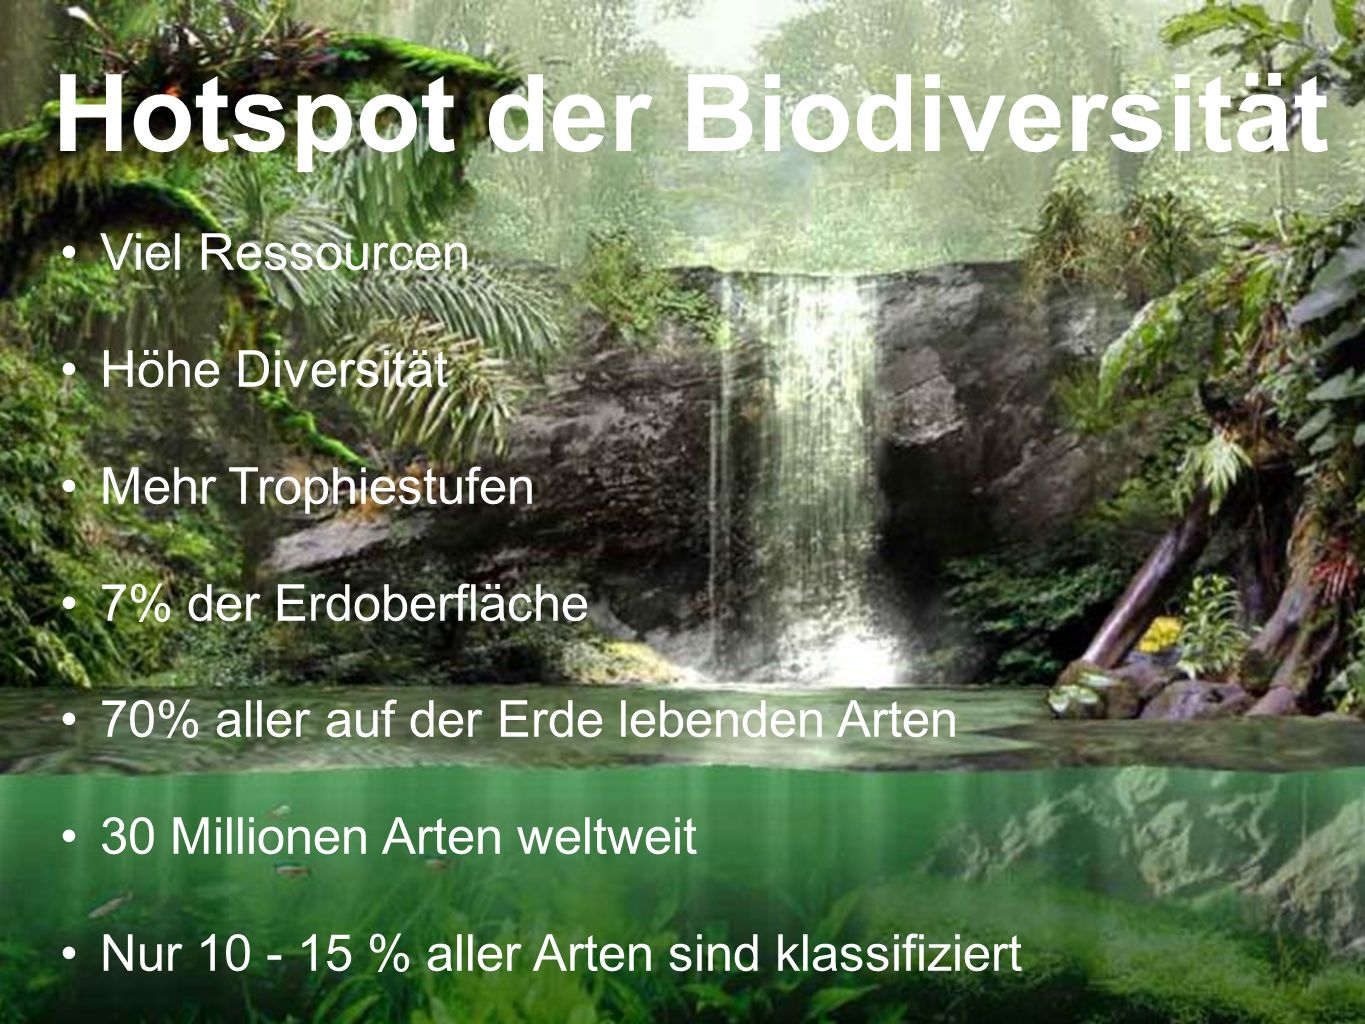 Hotspot der Biodiversität